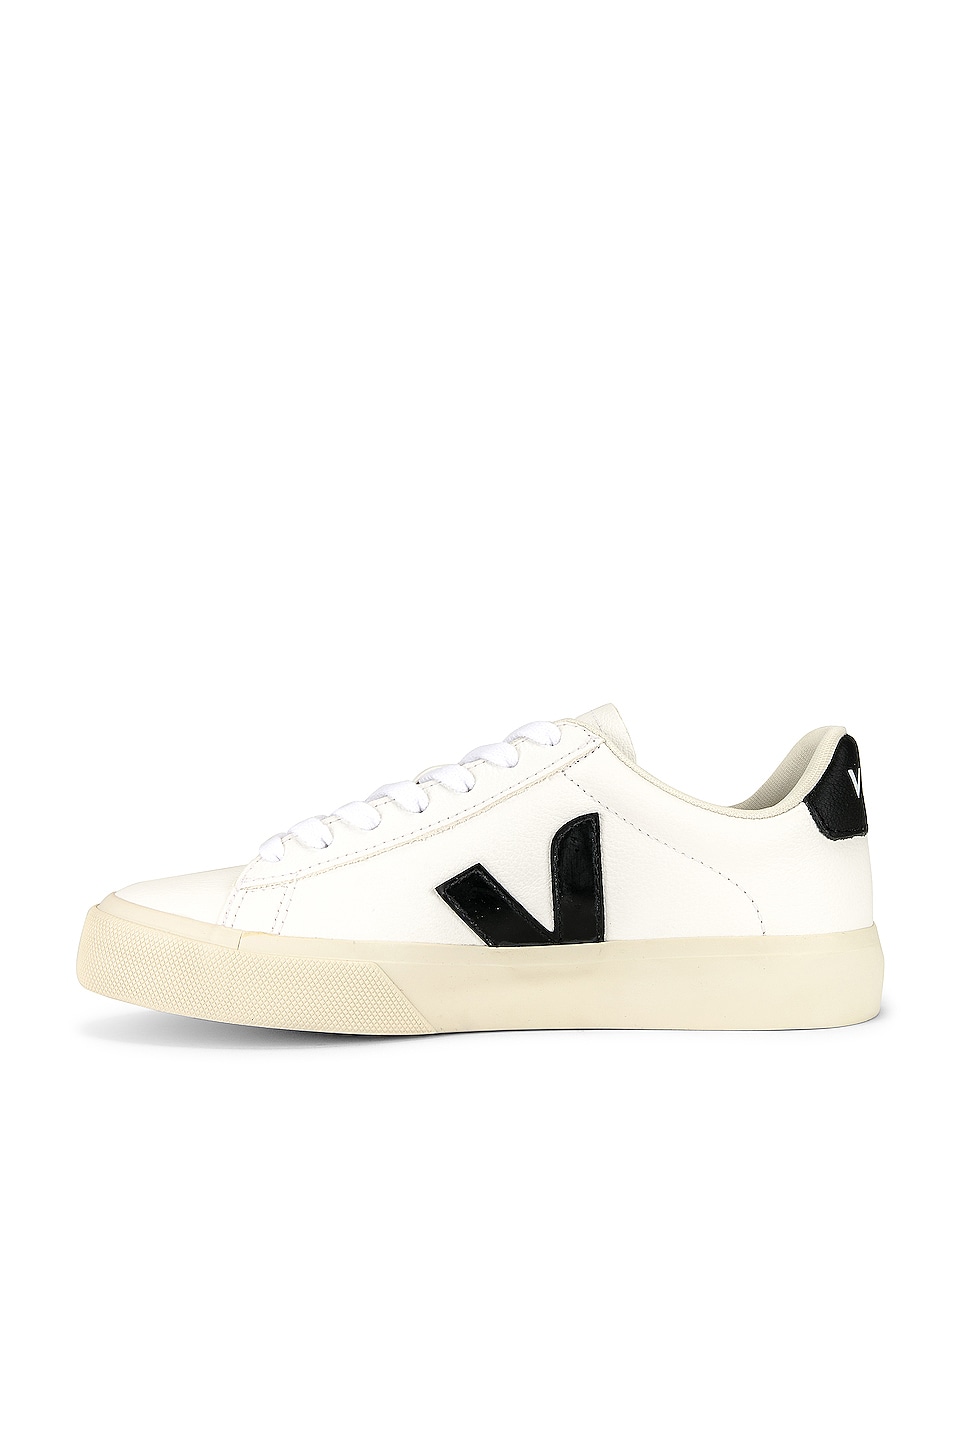 Veja Campo Sneaker in Extra White & Black | REVOLVE